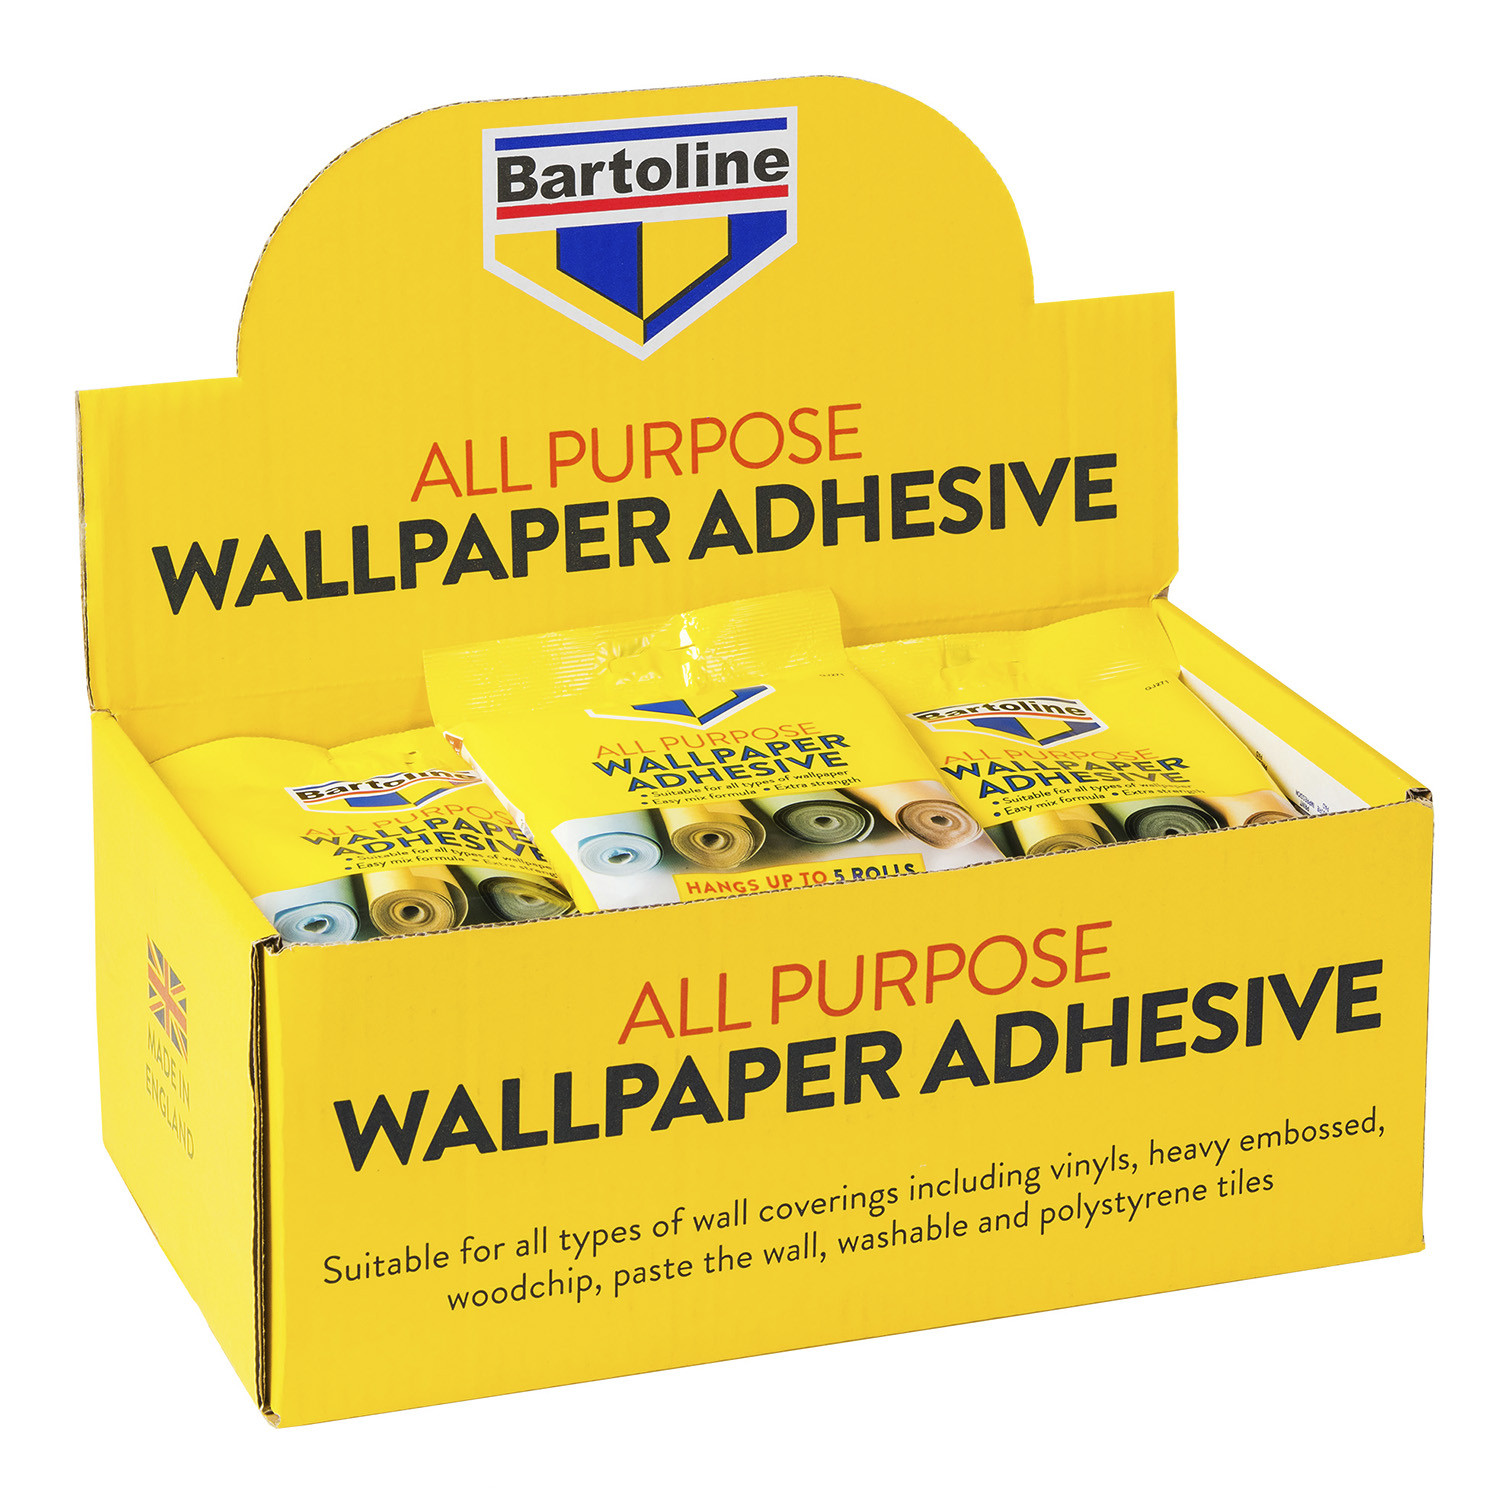 Bartoline All Purpose Wallpaper Adhesive Sachet 95g 5 Pack Image